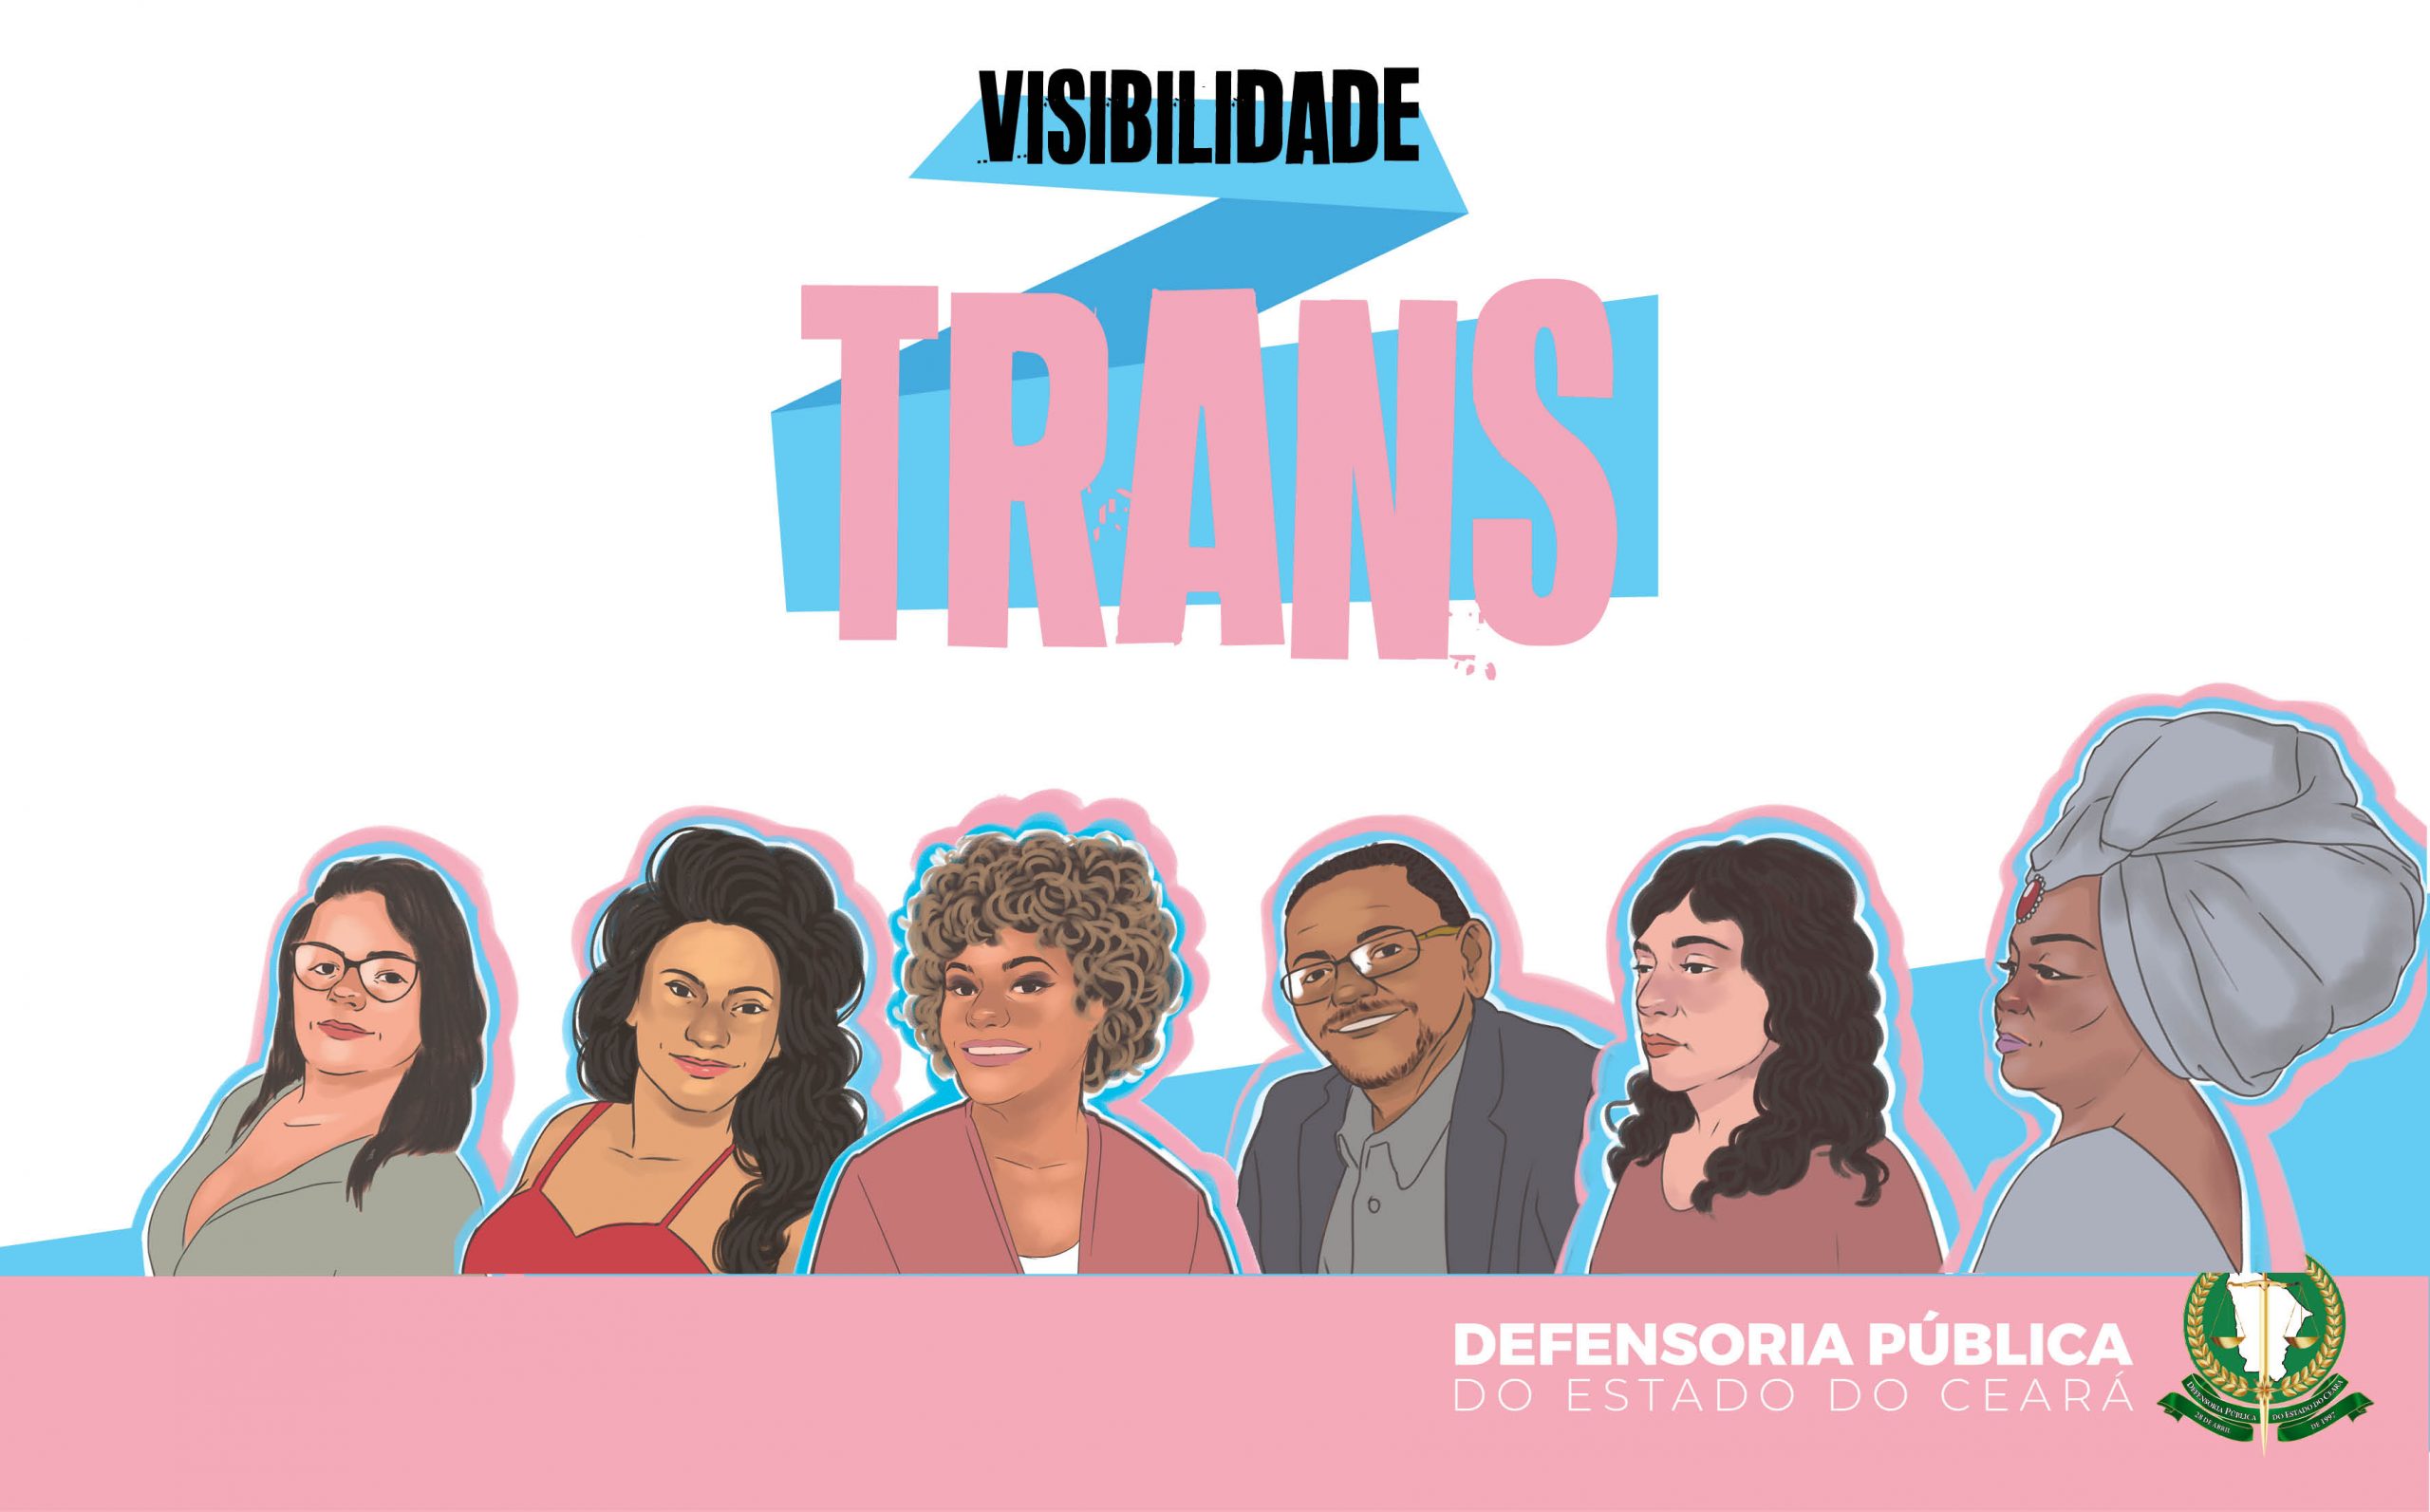 Defensoria lança “Visibilidade Trans”, série em alusão ao Dia Nacional da Visibilidade Trans